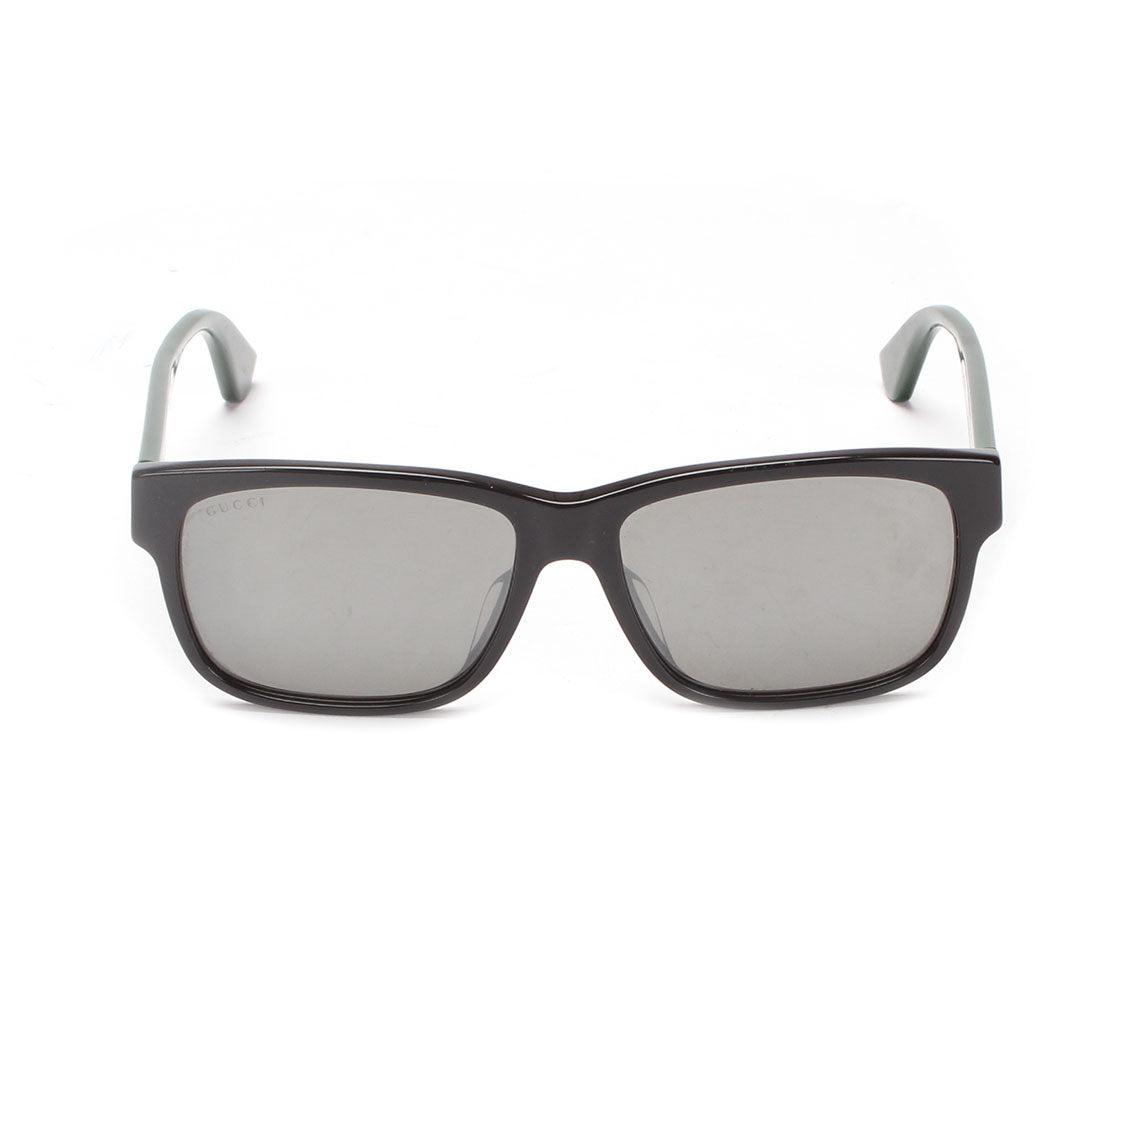 Gucci Tinted Sunglasses Plastic Sunglasses GG 0340 in Good condition